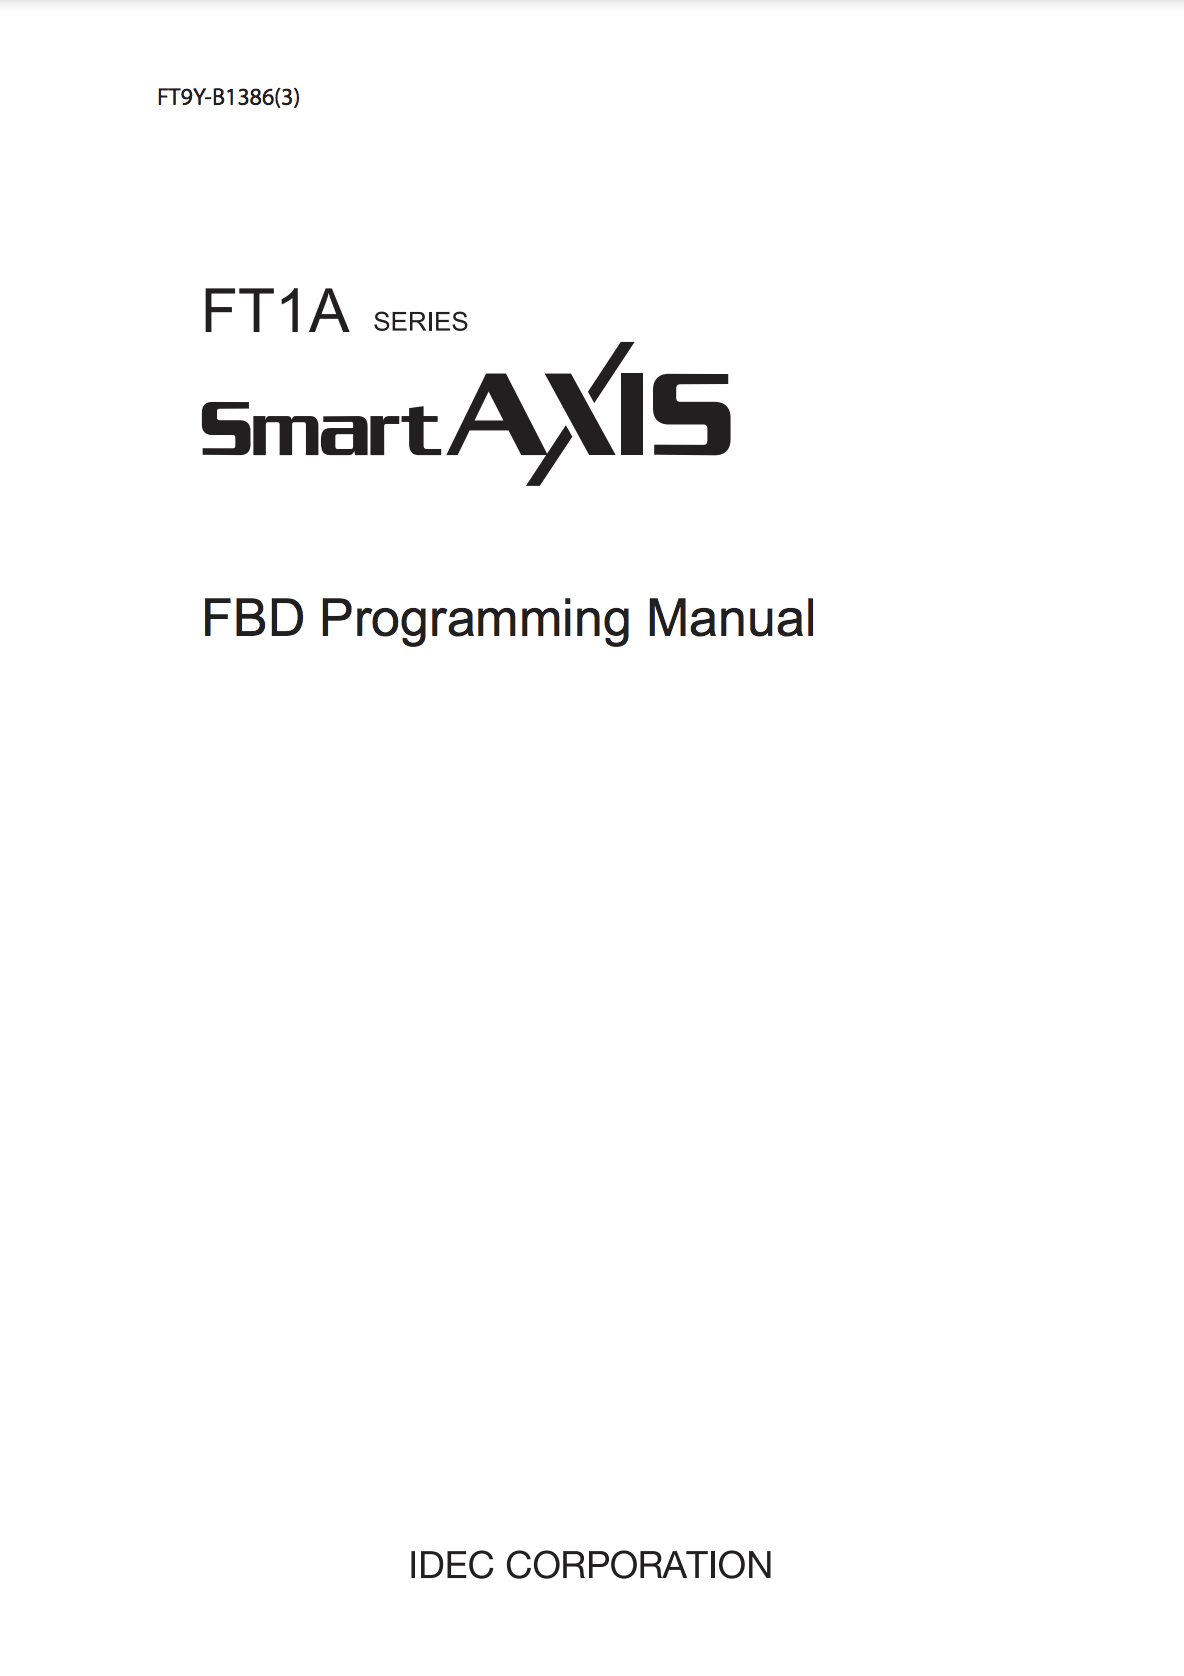 IDEC FT1A FBD Programming Manual